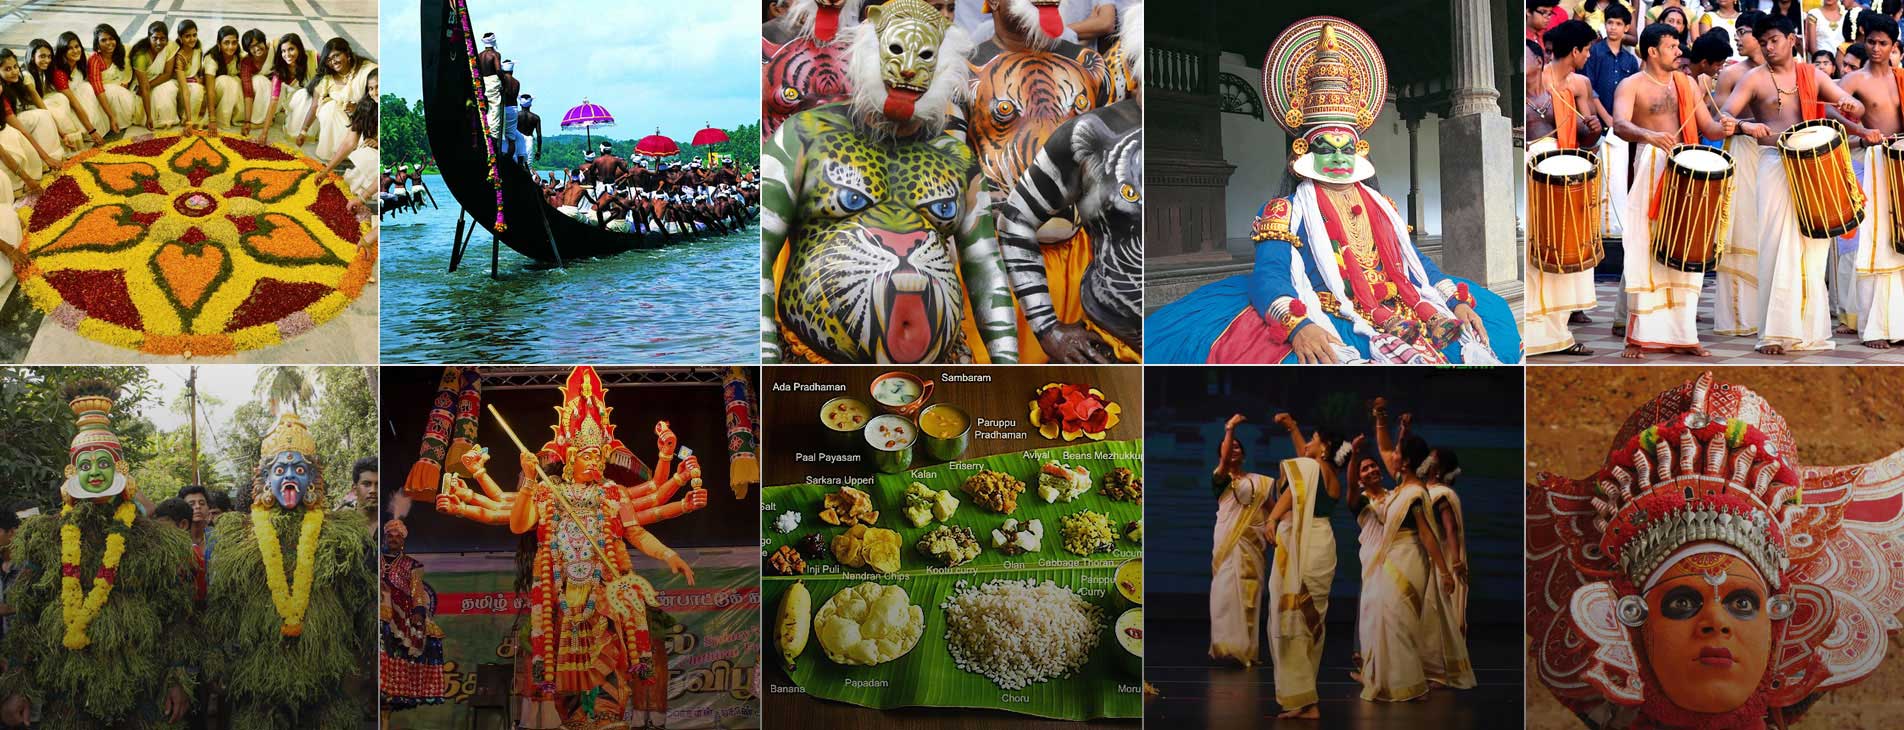 هند و جشنواره های زیبایش